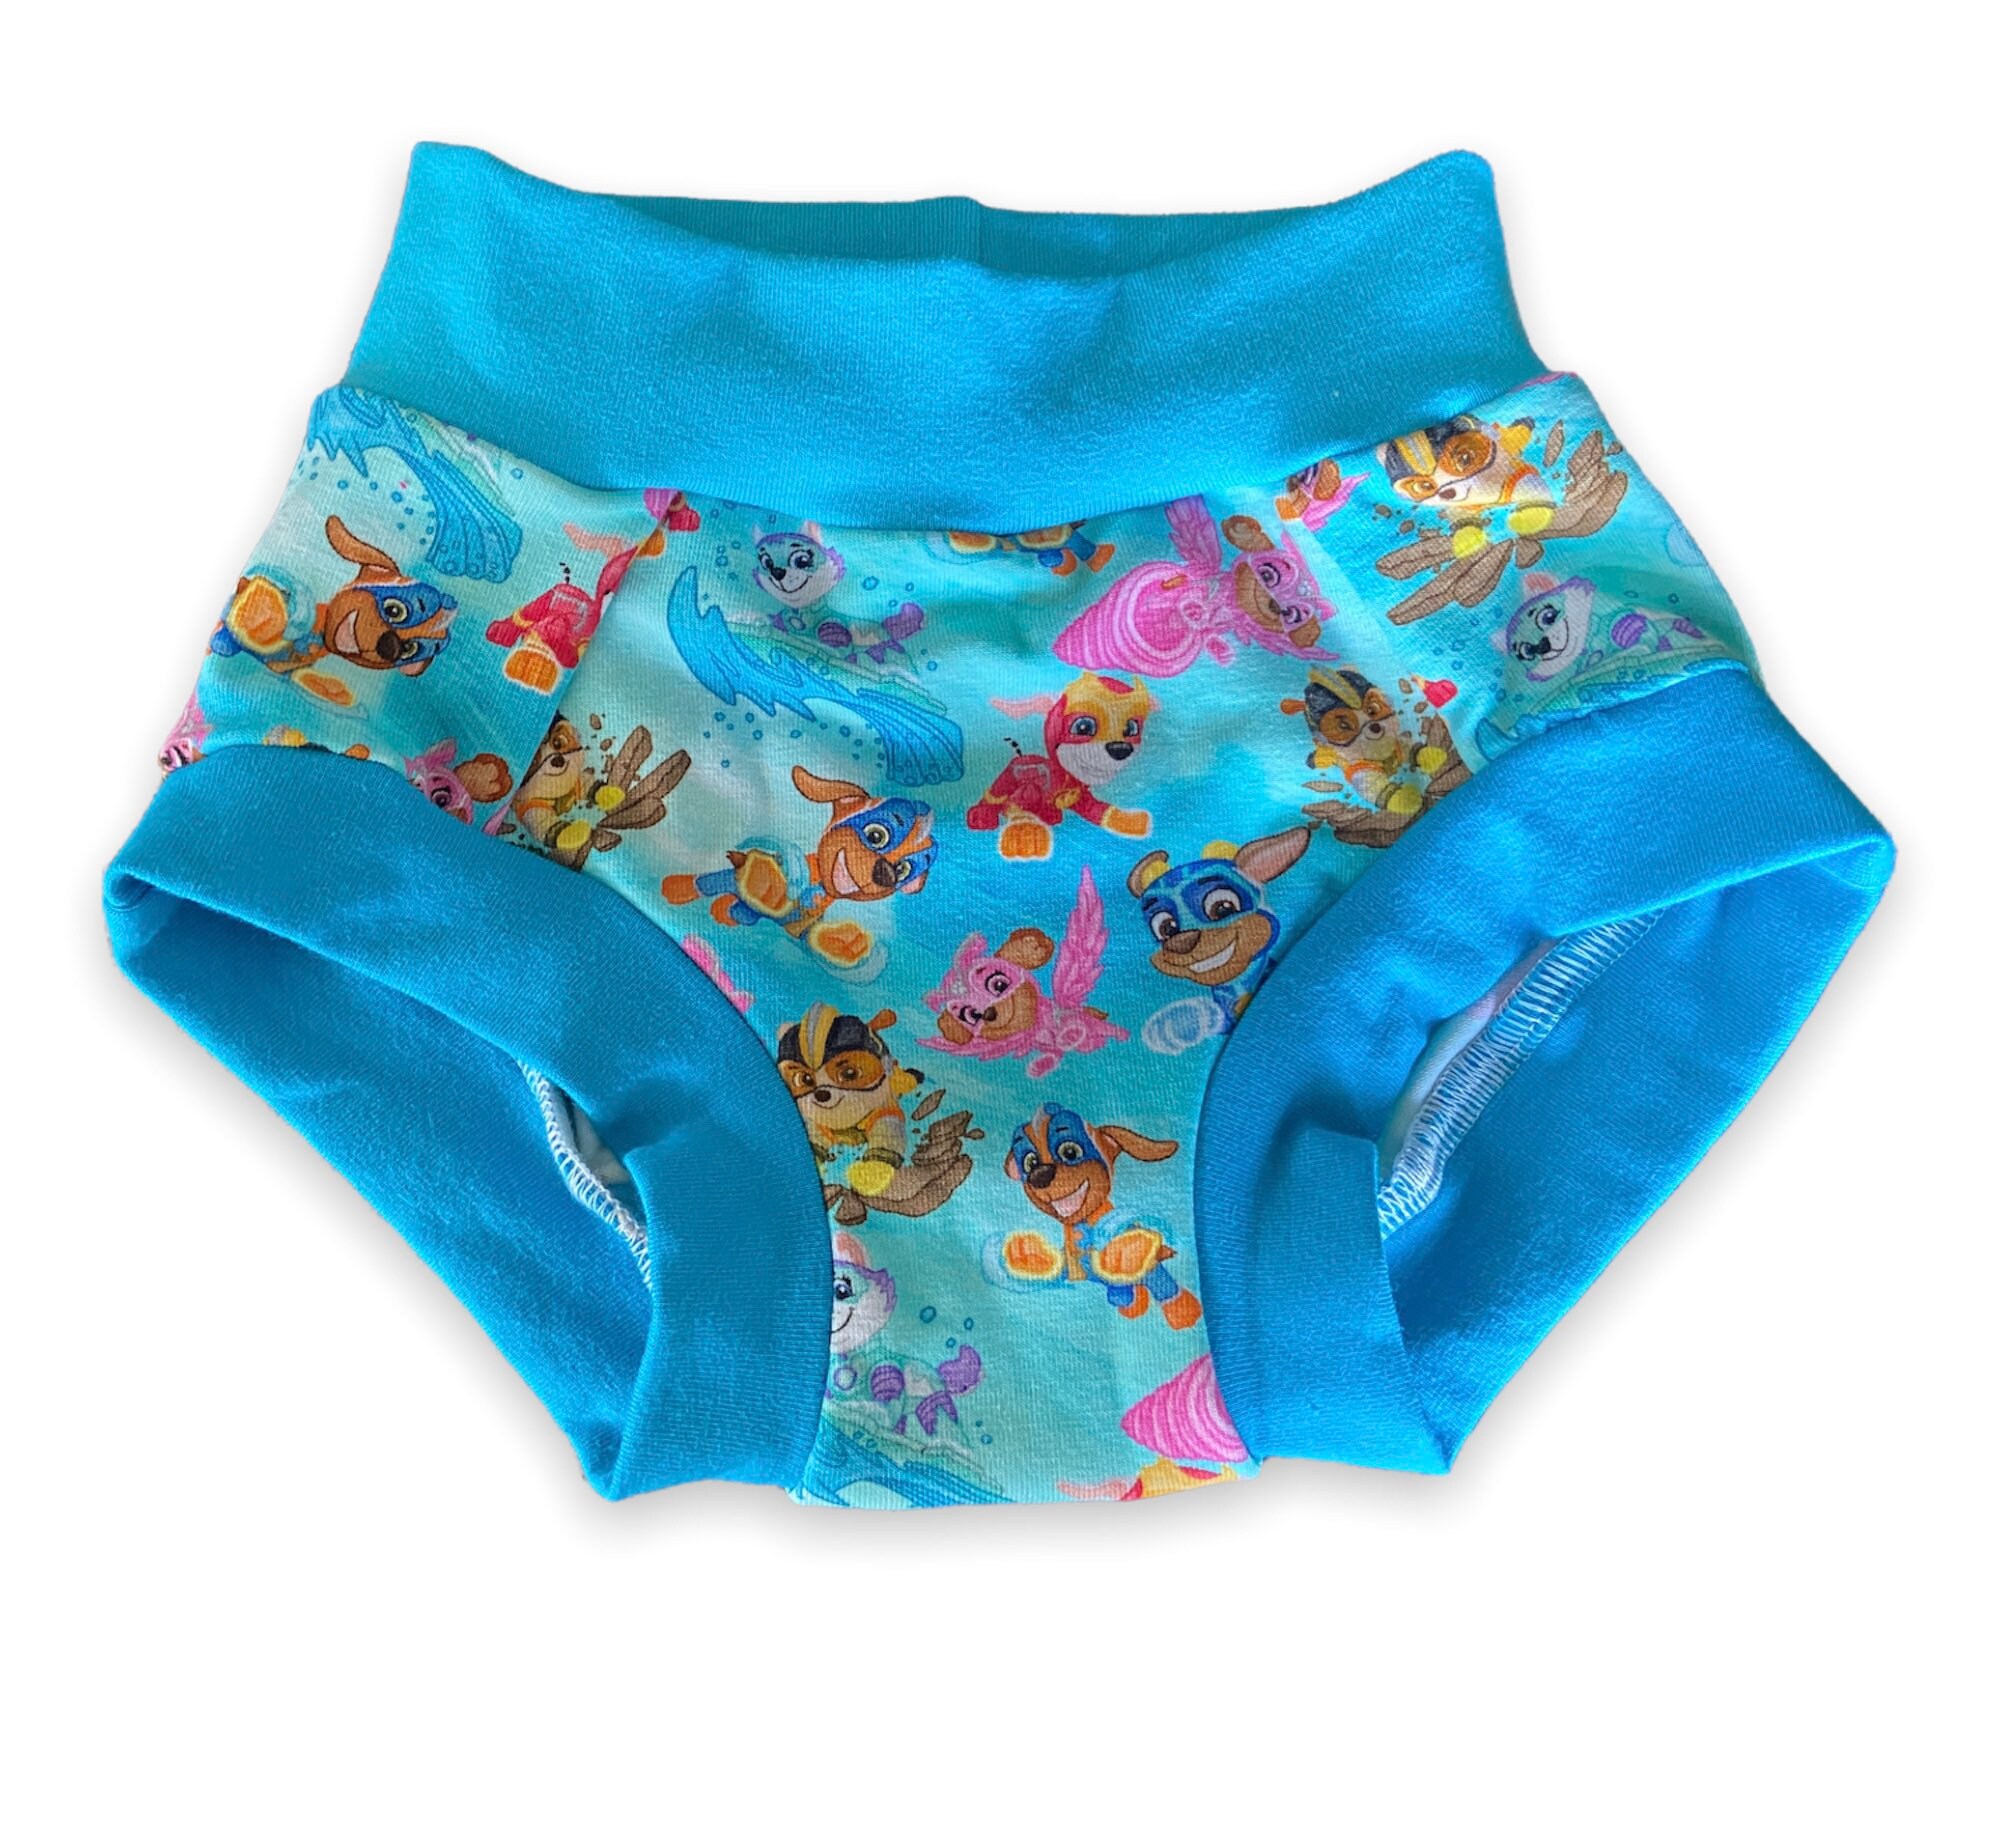 Kid Custom BOY Style Boxer Brief Panties Underwear Undies Scrundies Toddler Children Knit Clothing Boys Clothing Underwear Premium Prints 2T 3T 4T 6 8 10 12 